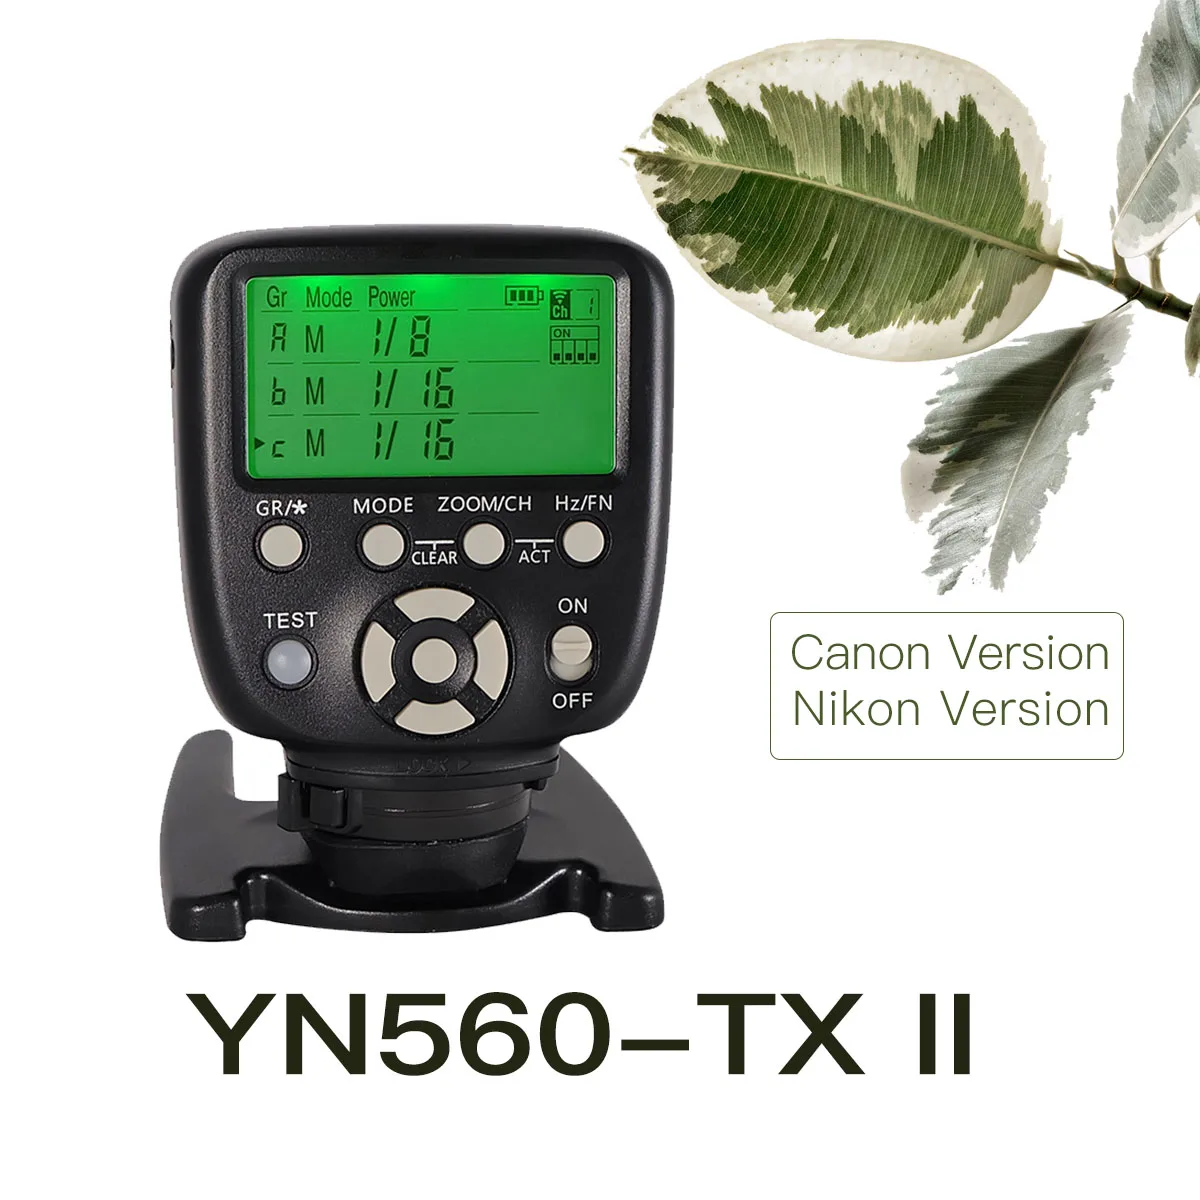 

YN560-TX II YONGNUO Flash Wireless Trigger Manual Flash Controller For Canon Nikon YN560III YN560IV YN660 968N YN860Li Speedlite